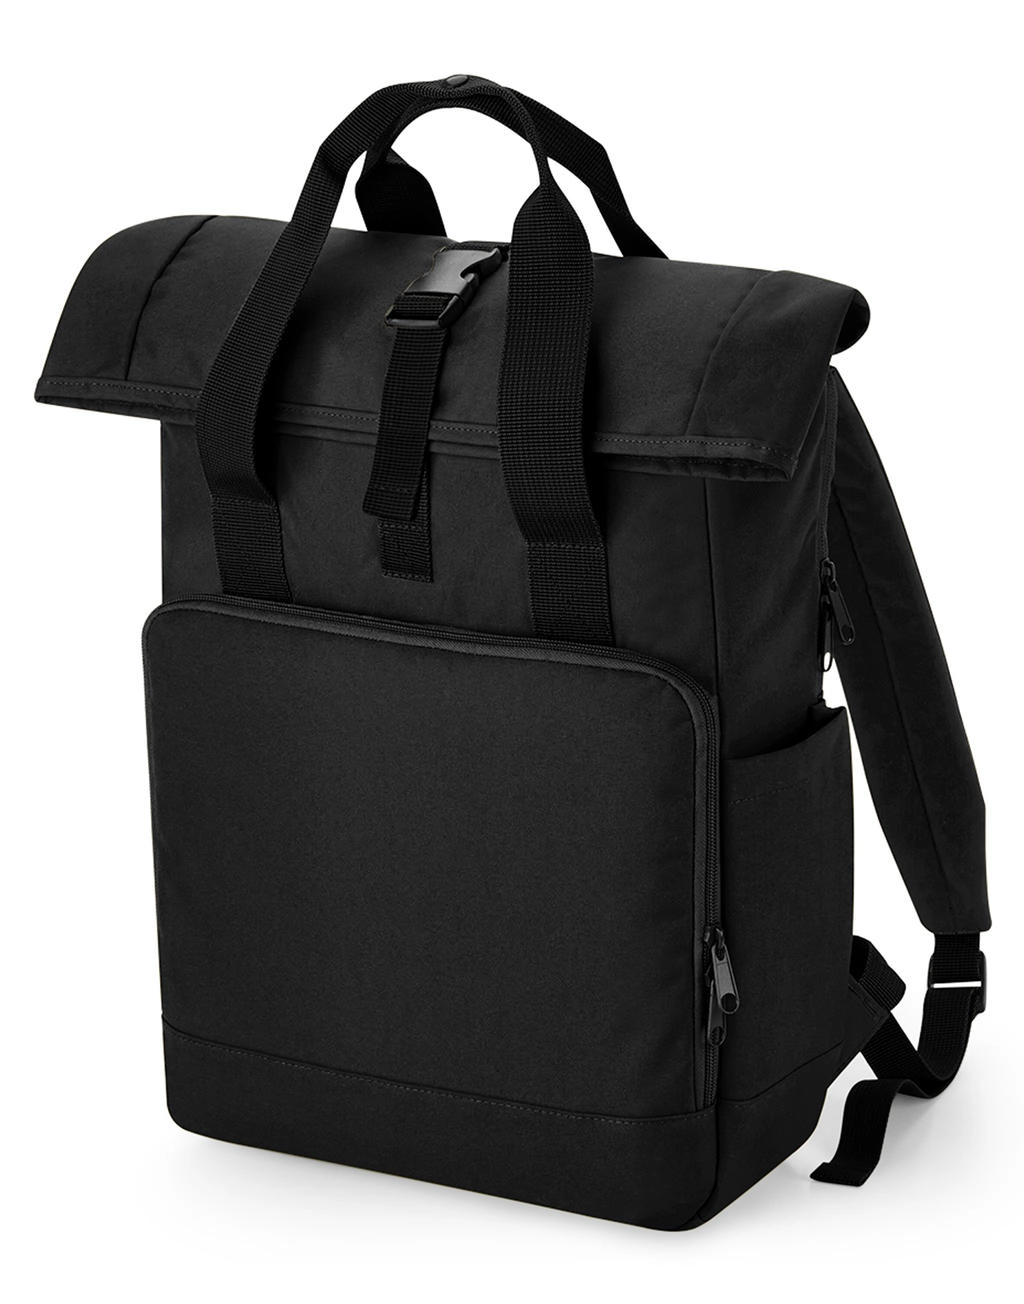 Recycled Twin Handle Roll-Top Laptop Backpack zum Besticken und Bedrucken mit Ihren Logo, Schriftzug oder Motiv.